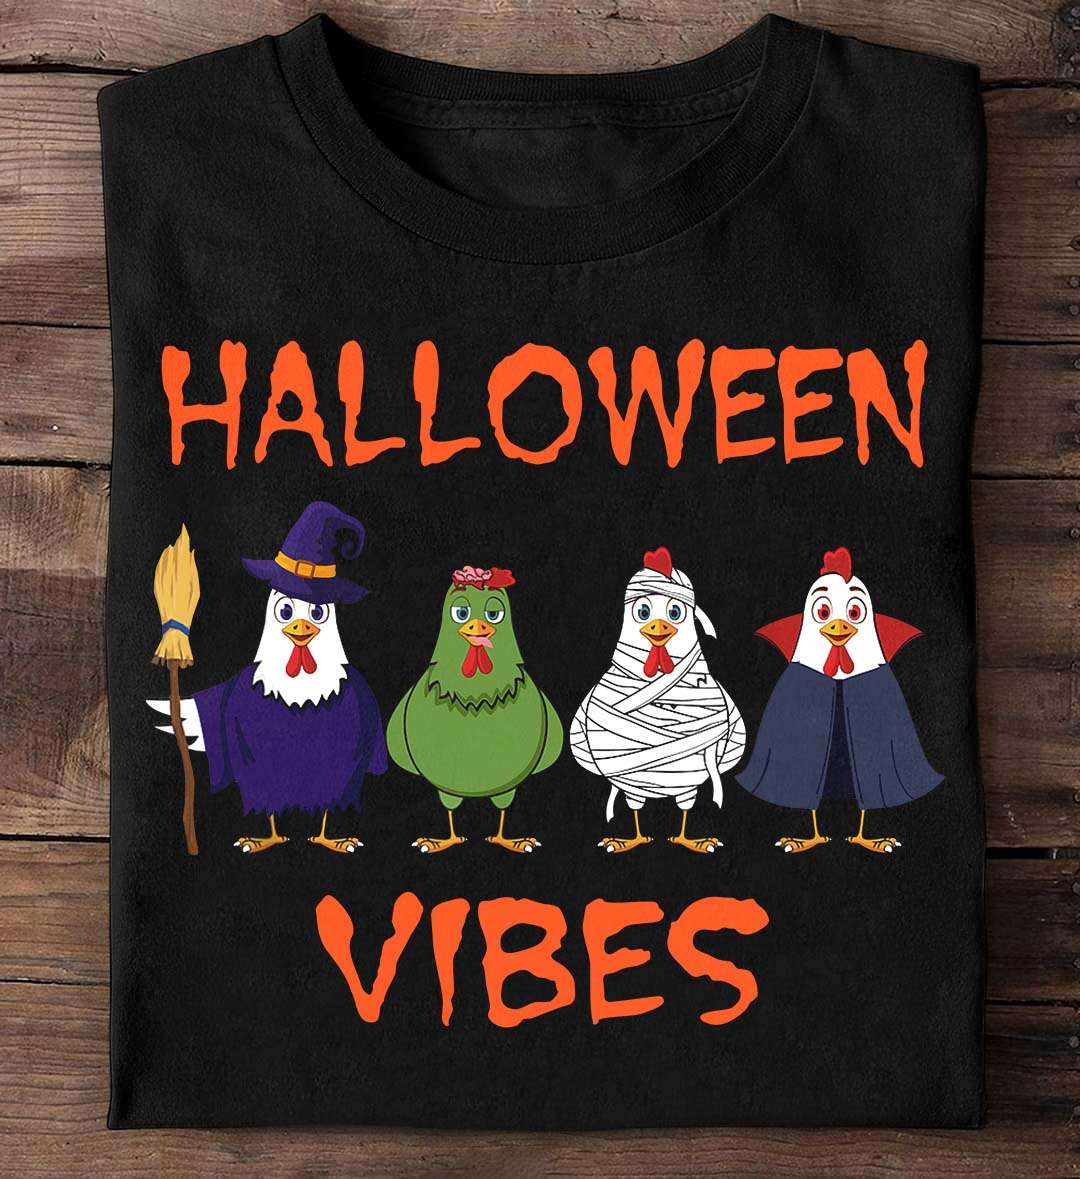 Halloween vibes - Halloween spooky vibes, Halloween chicken costume